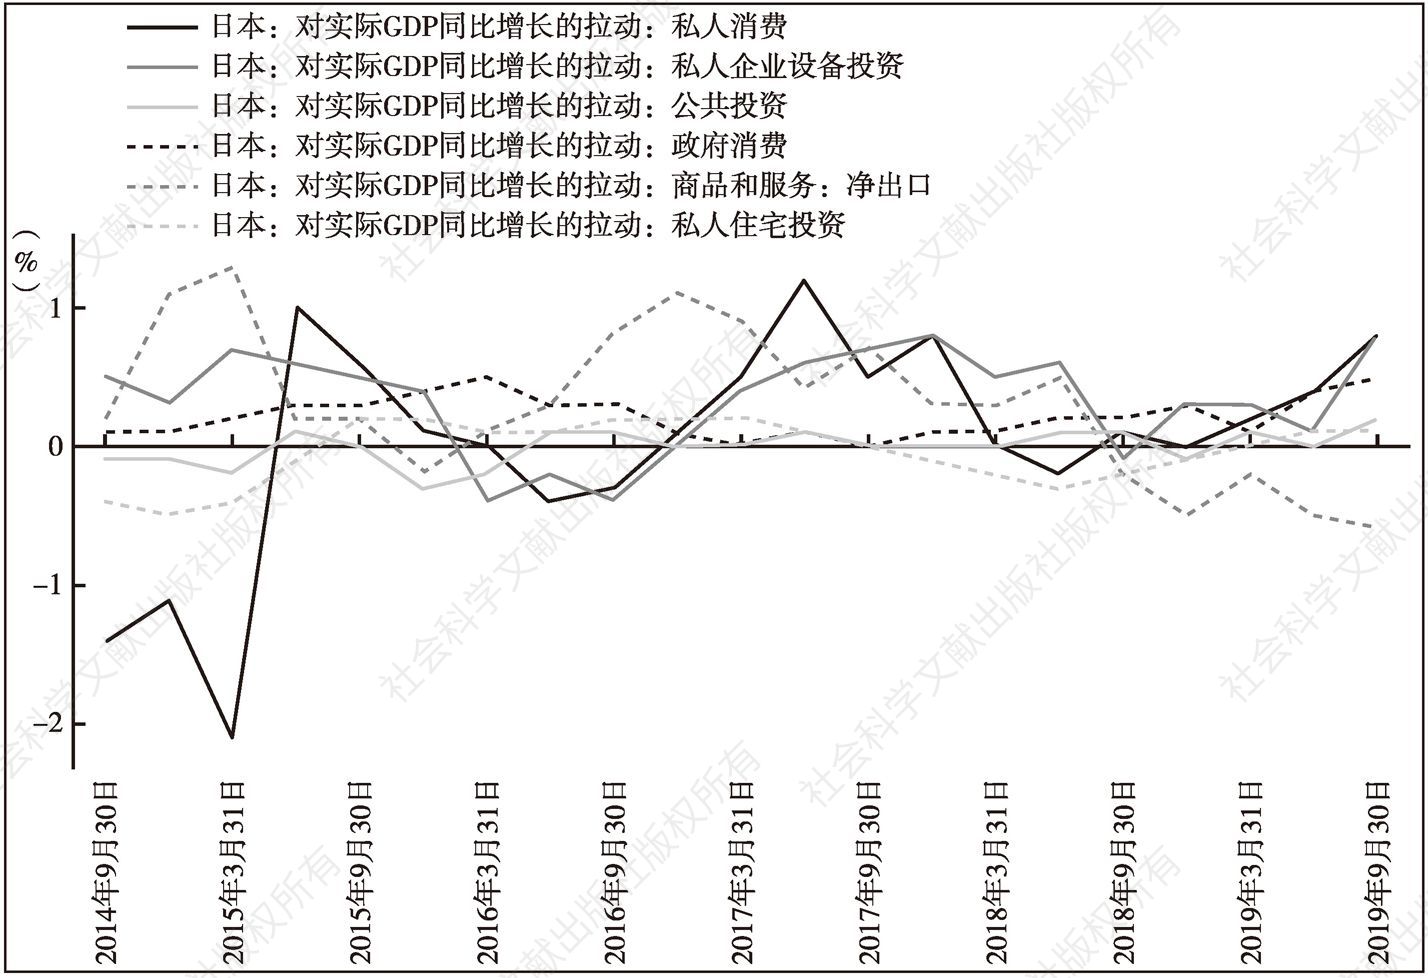 图5 日本投资、消费与出口对GDP的拉动